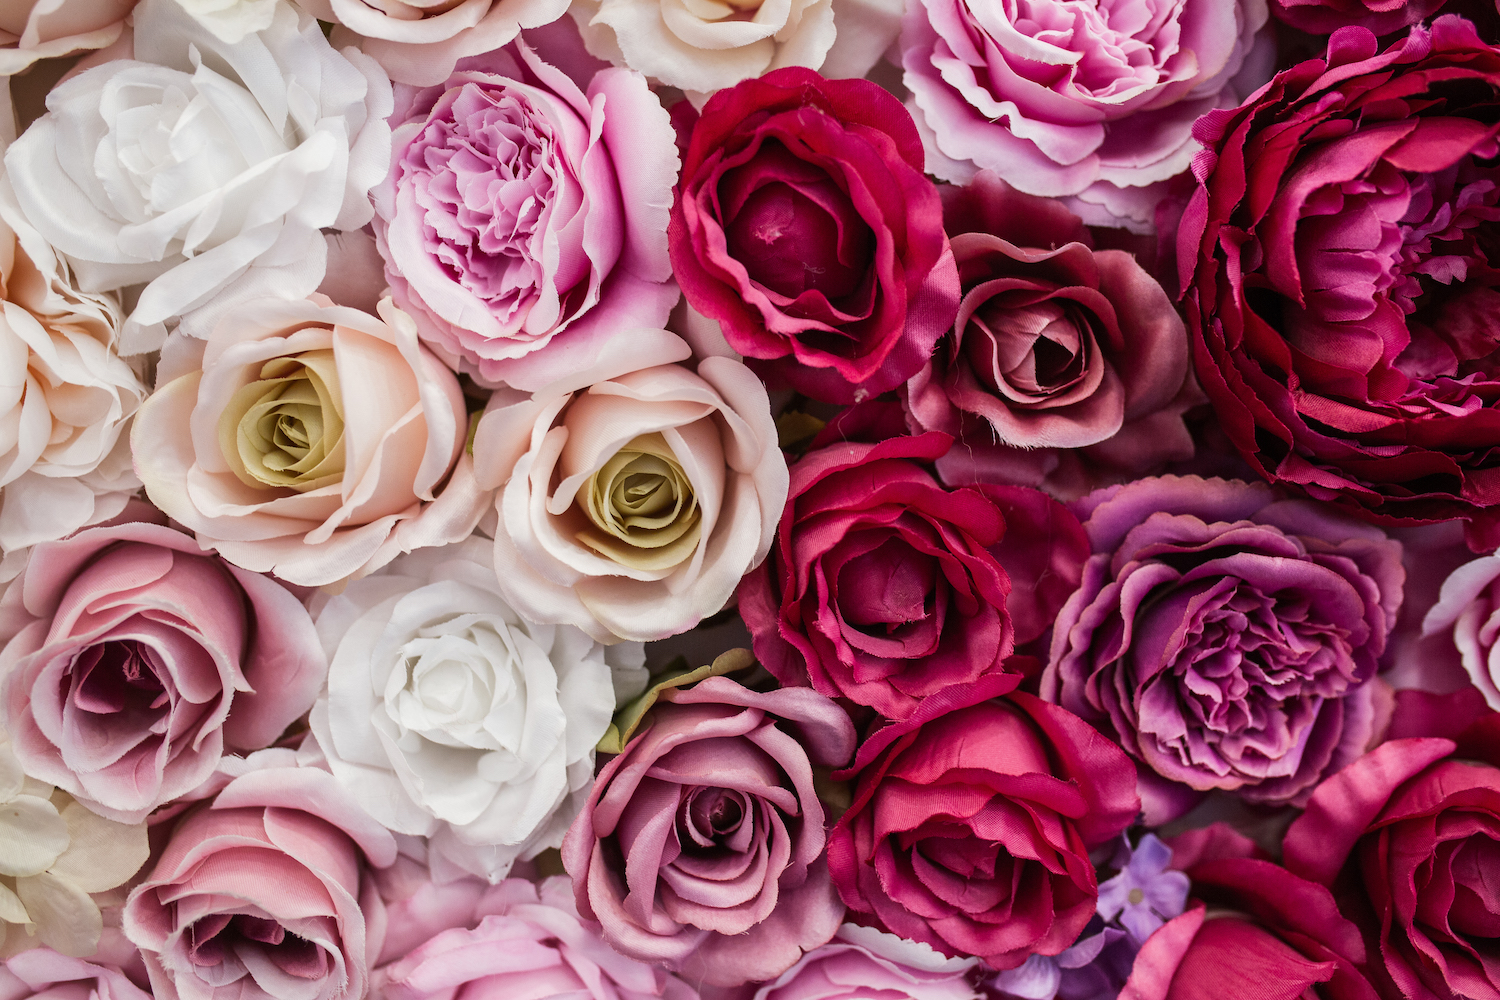 offrir des fleurs pour un mariage, choisir des roses éternelles ‣  Mademoiselle Dentelle